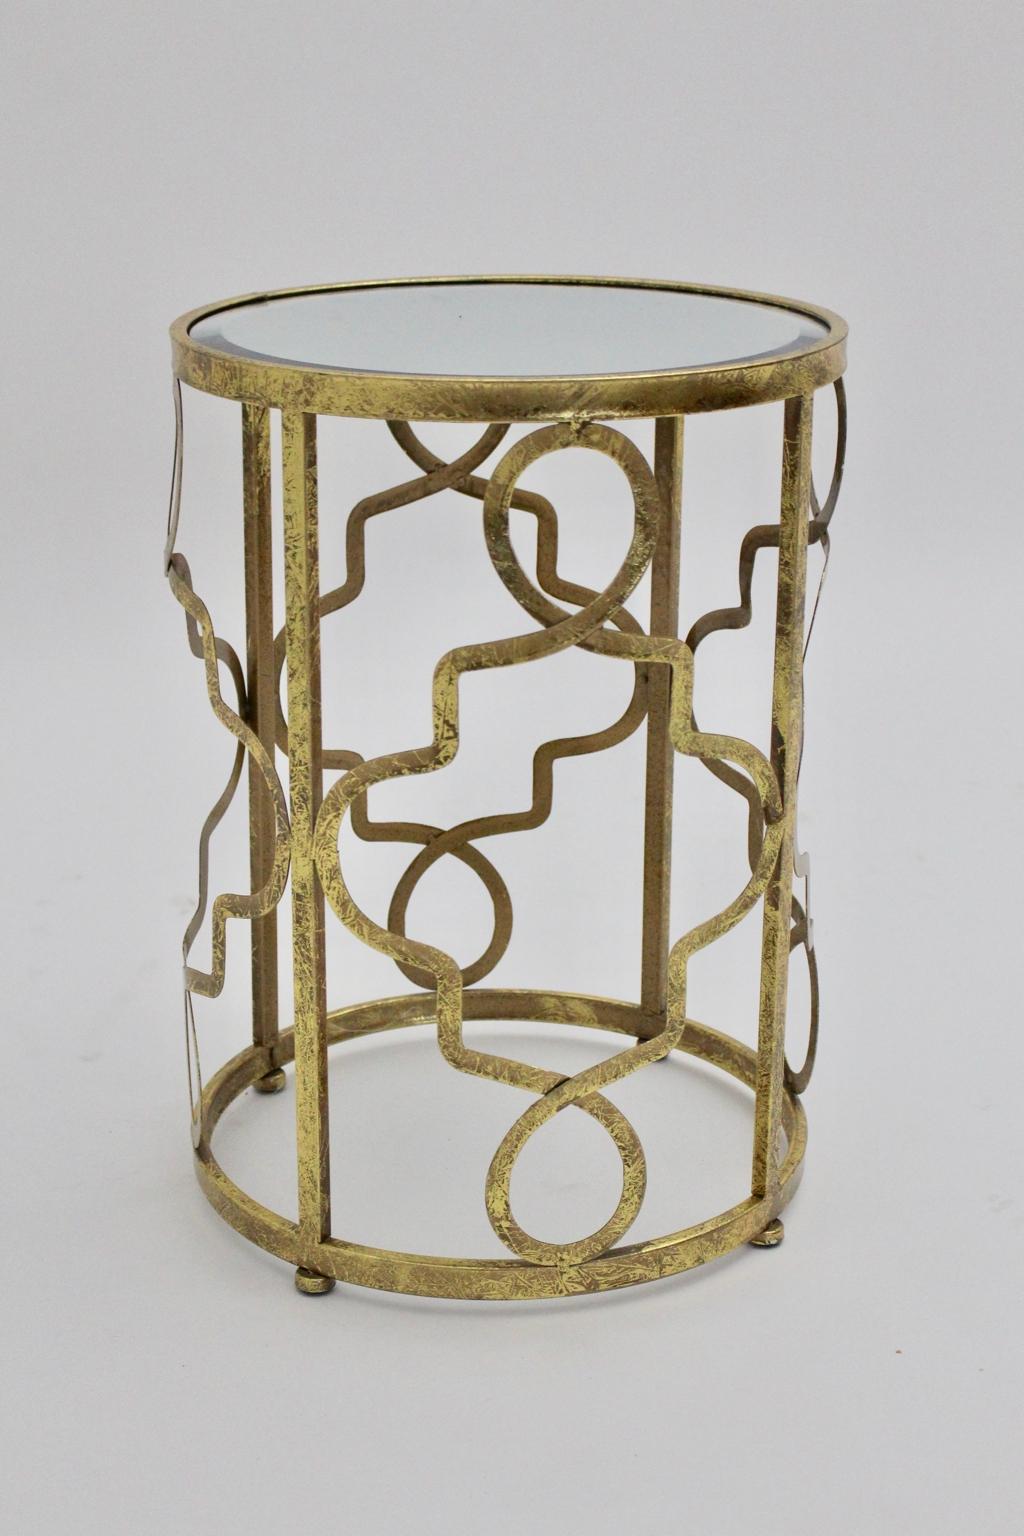 Moderner skulpturaler Vintage-Beistelltisch aus goldenem Metall und Spiegelplatte.
Ein atemberaubender Beistelltisch mit einem schönen skulpturalen Sockel, der mit einem facettierten Spiegel versehen ist.
Dieser feminine Beistelltisch oder diese